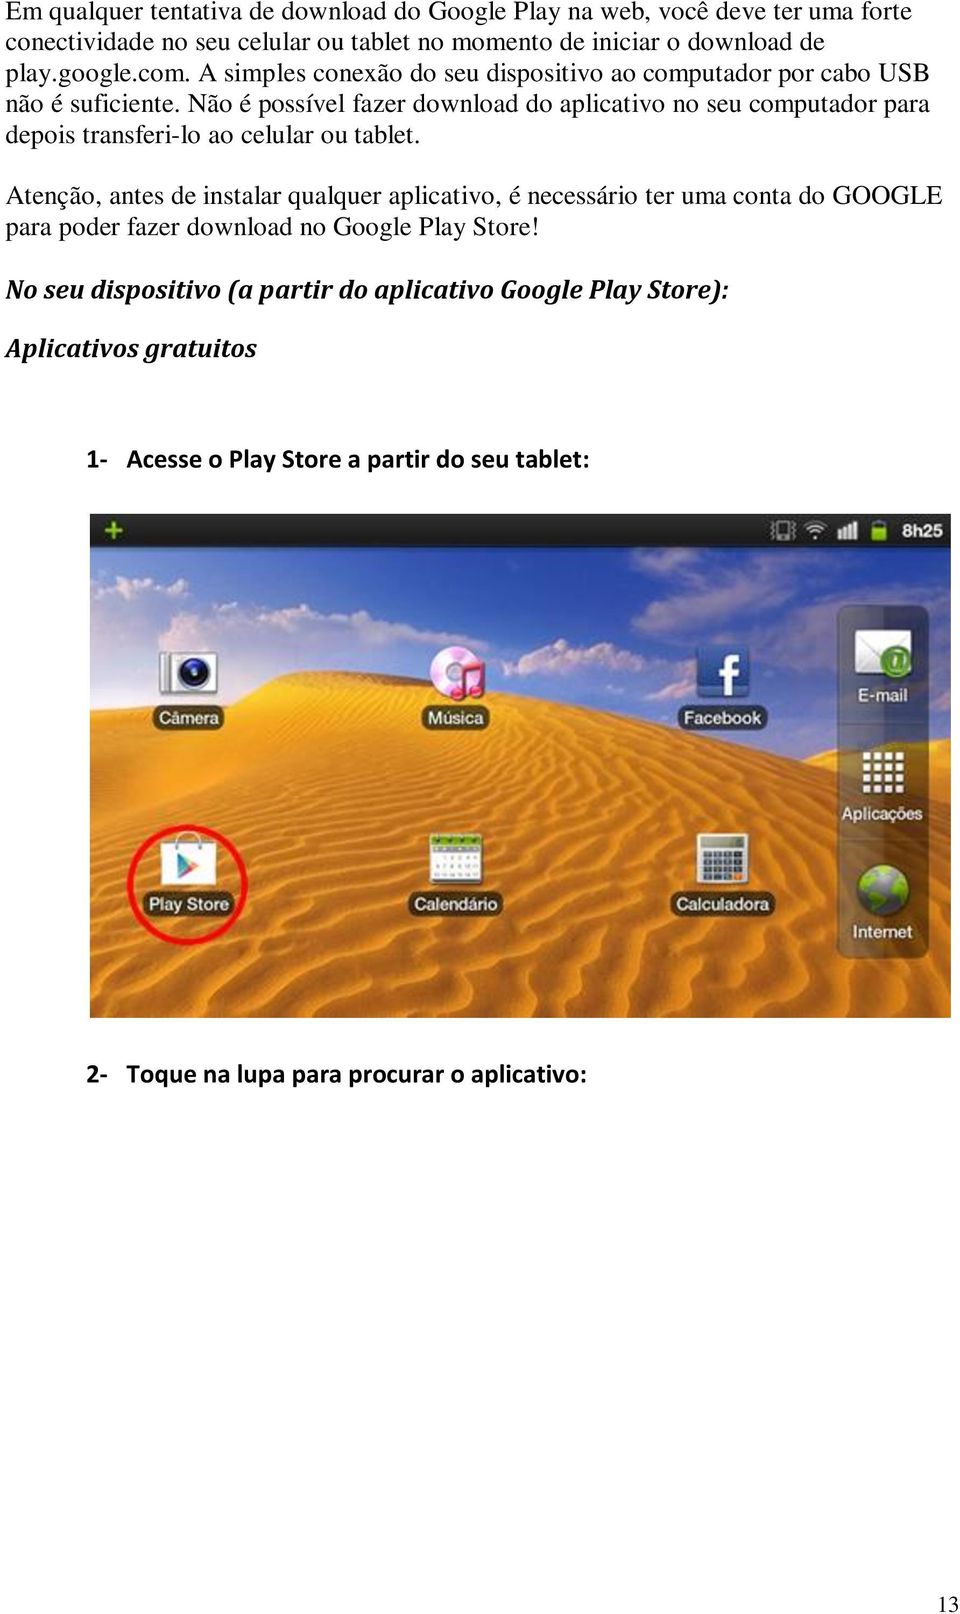 Não é possível fazer download do aplicativo no seu computador para depois transferi-lo ao celular ou tablet.